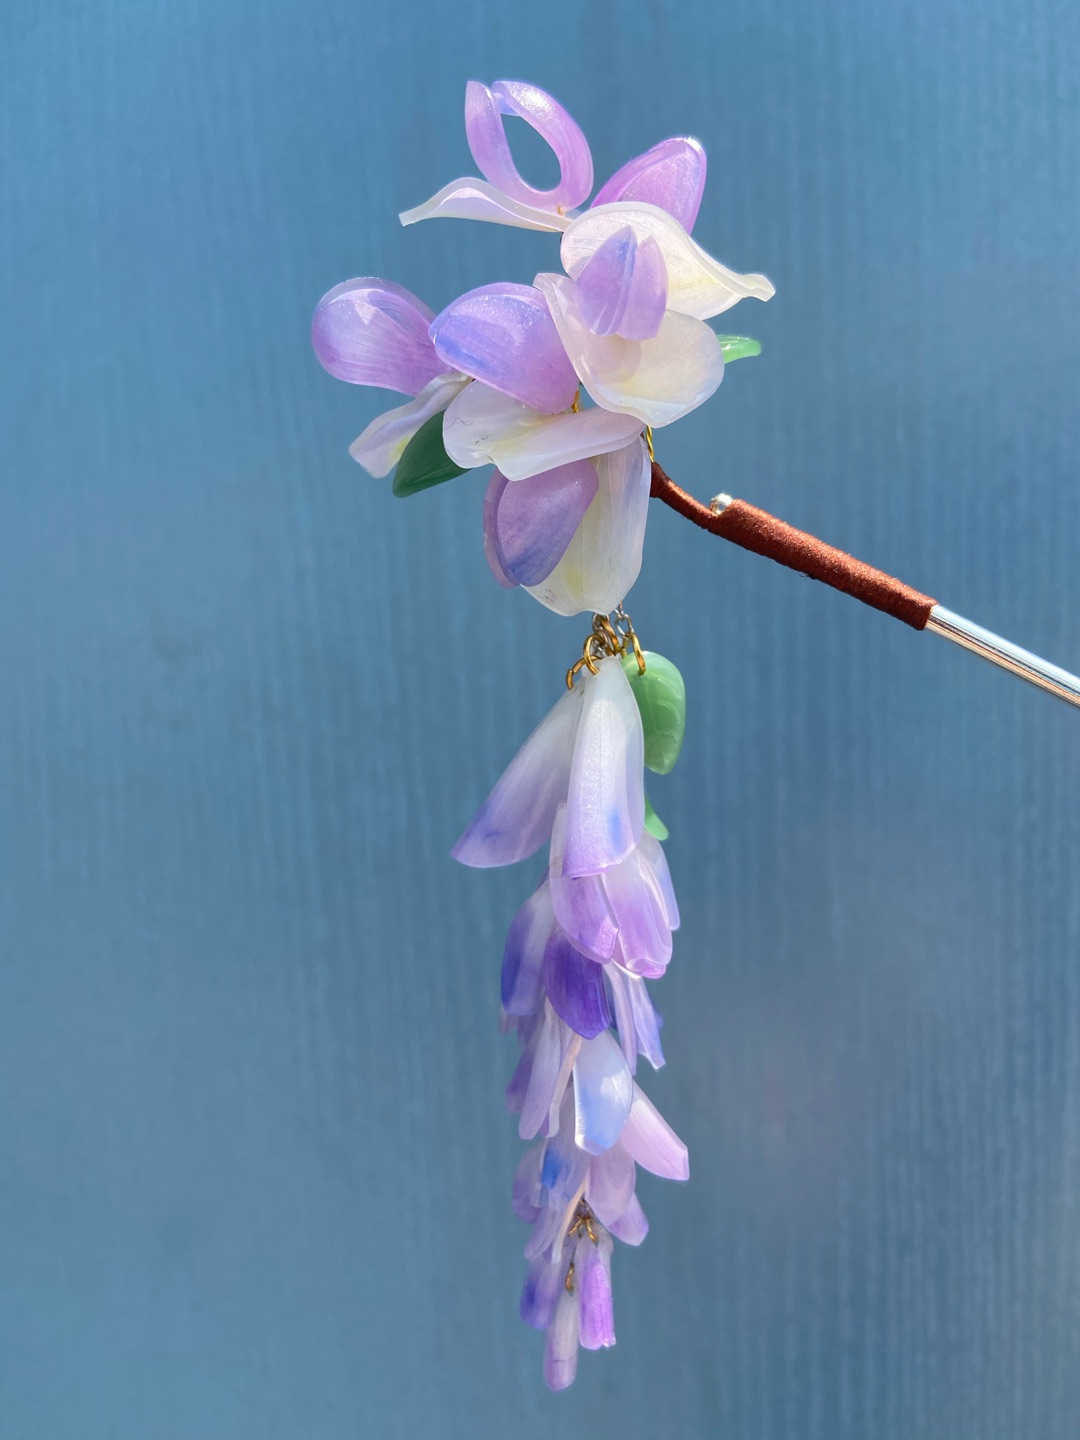 紫藤的小花瓣弄得多是很好看，还有摩擦产生的叮叮当当的声音。